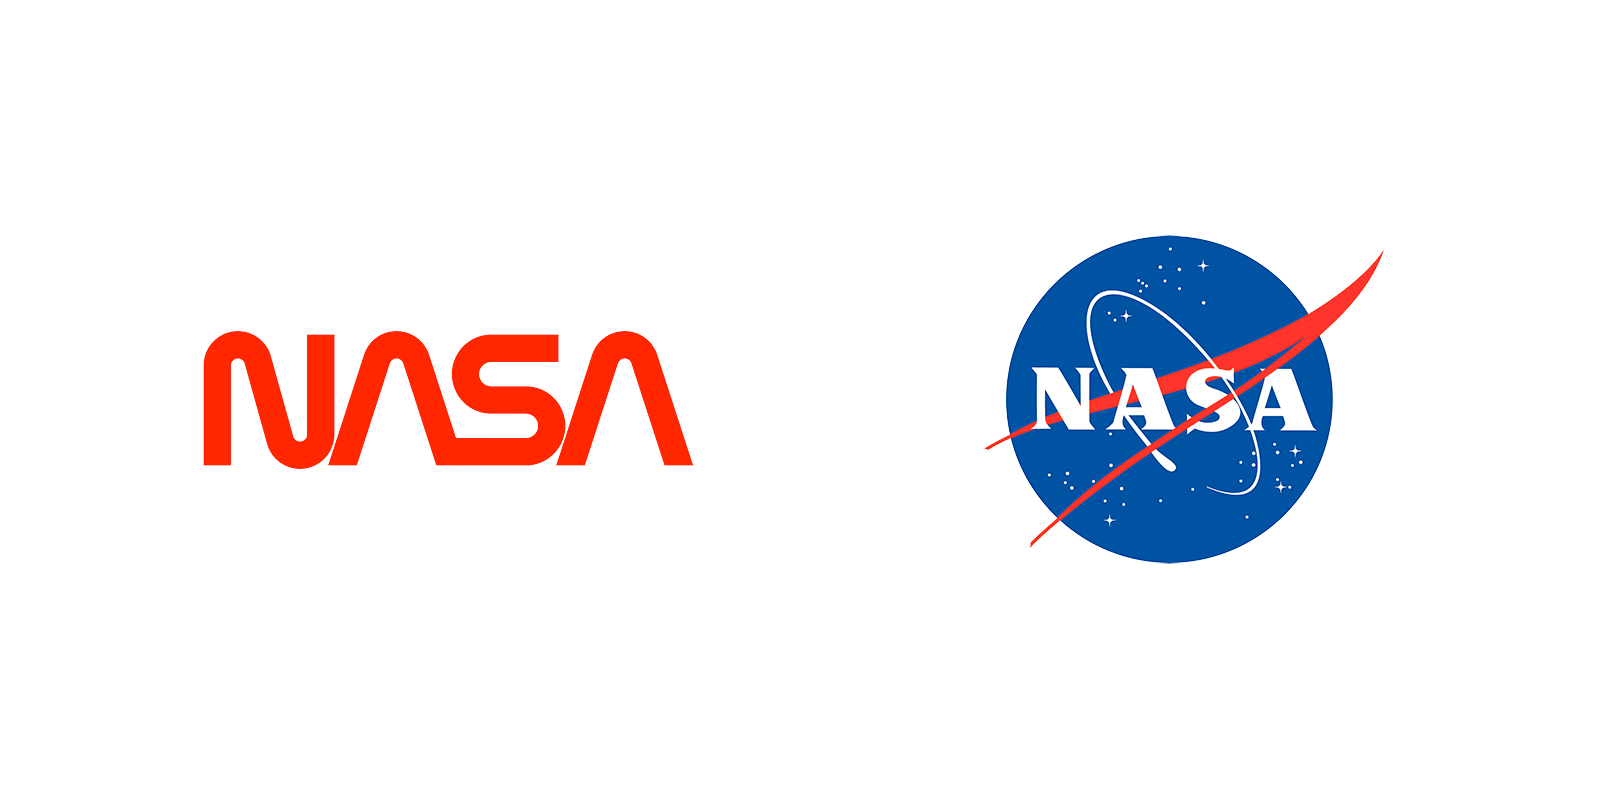 NASA’s Worm and Meatball Logos